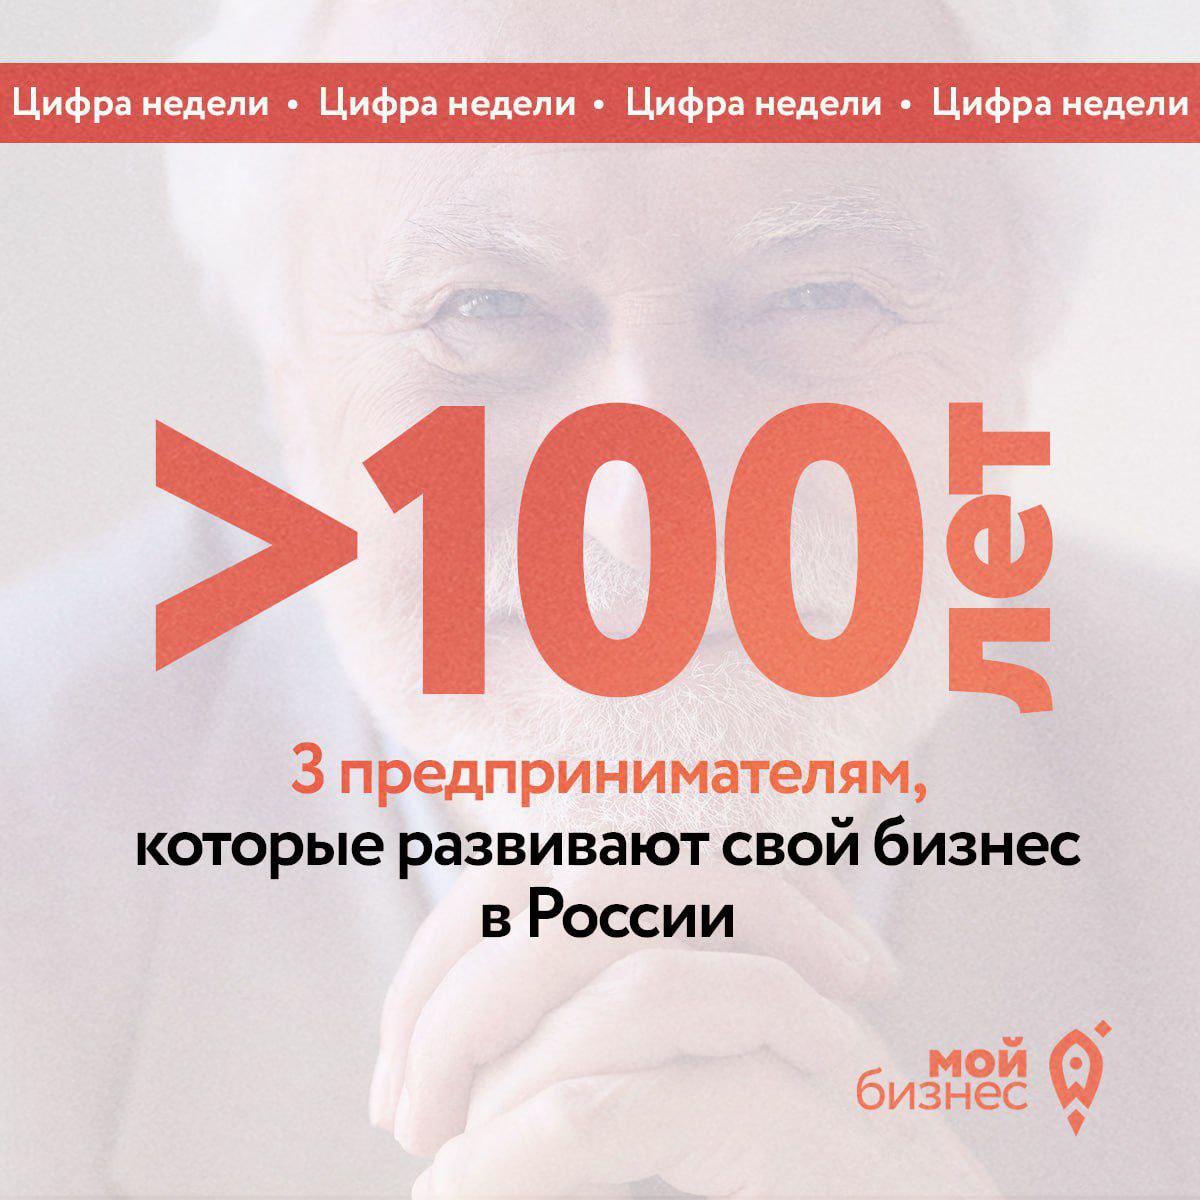 Больше 100 лет трём предпринимателям, которые развивают свой бизнес в России